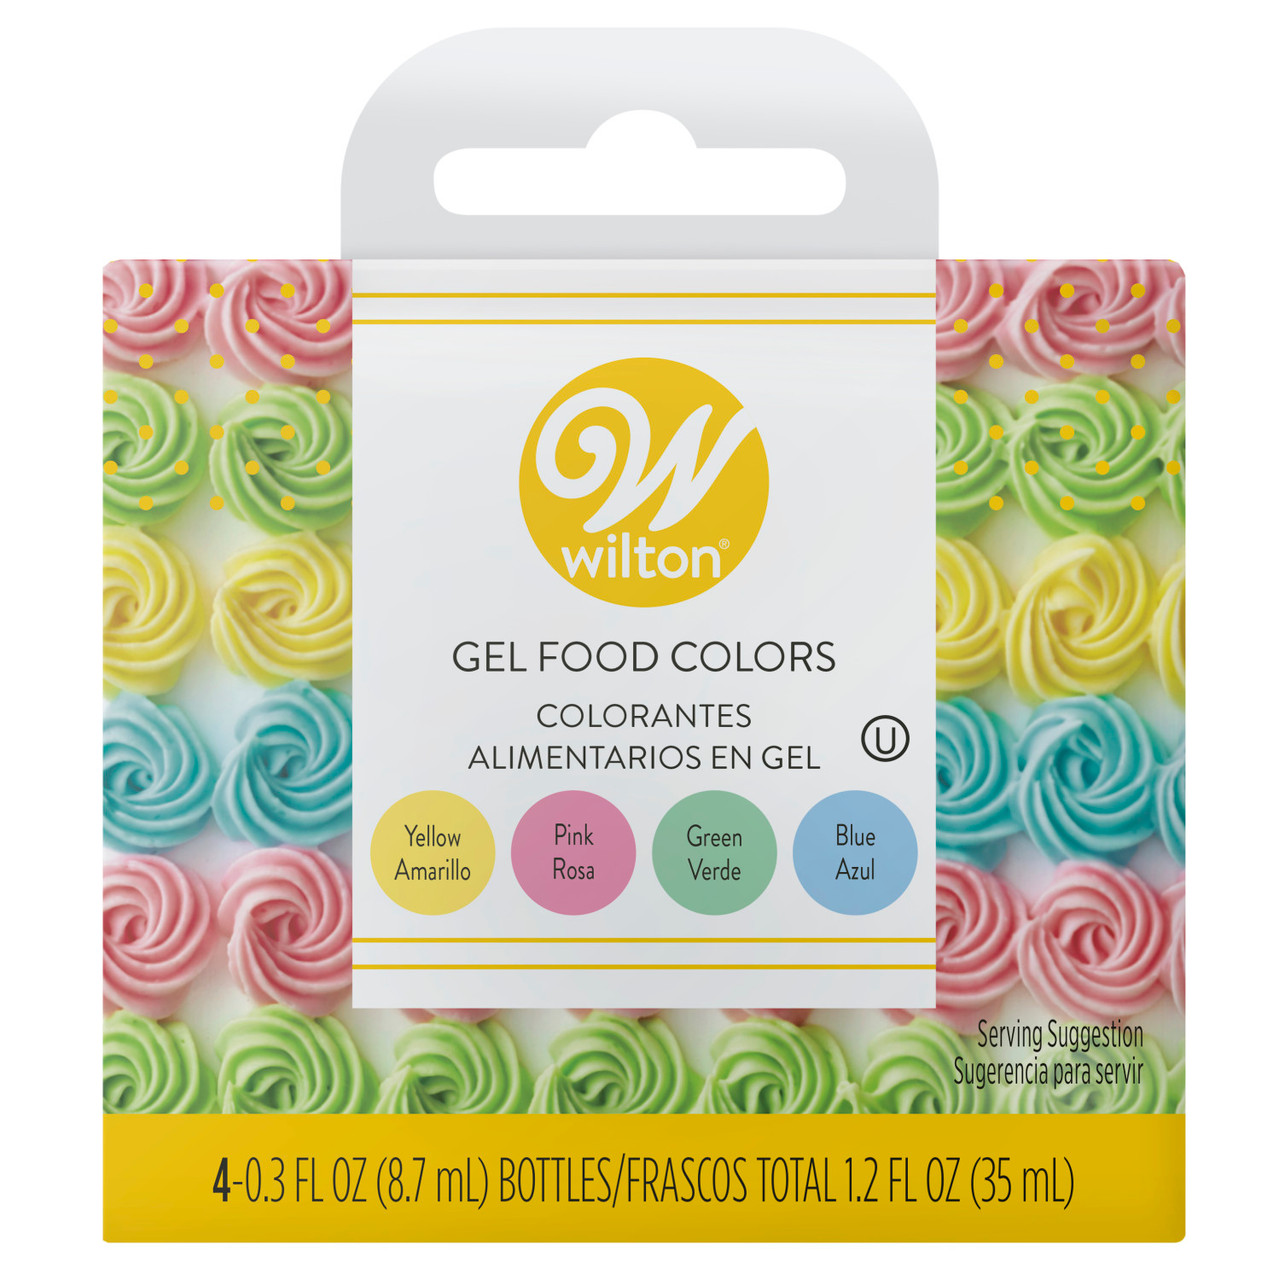 Wilton Icing Colors - 12 colorantes alimentarios a base de gel